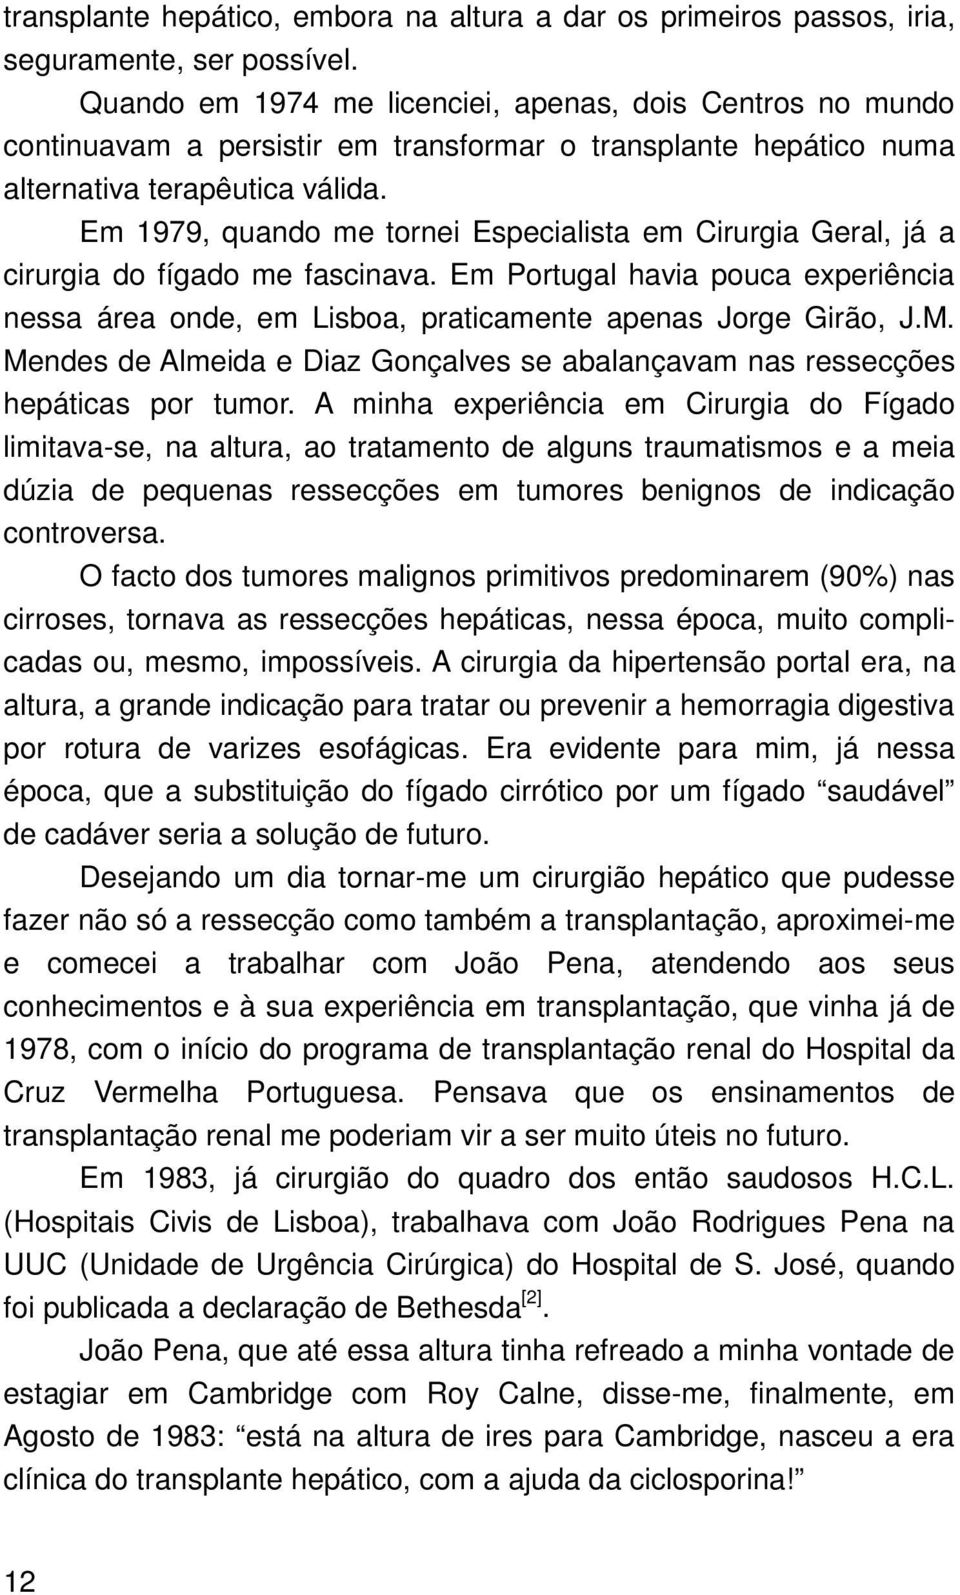 Em 1979, quando me tornei Especialista em Cirurgia Geral, já a cirurgia do fígado me fascinava. Em Portugal havia pouca experiência nessa área onde, em Lisboa, praticamente apenas Jorge Girão, J.M.